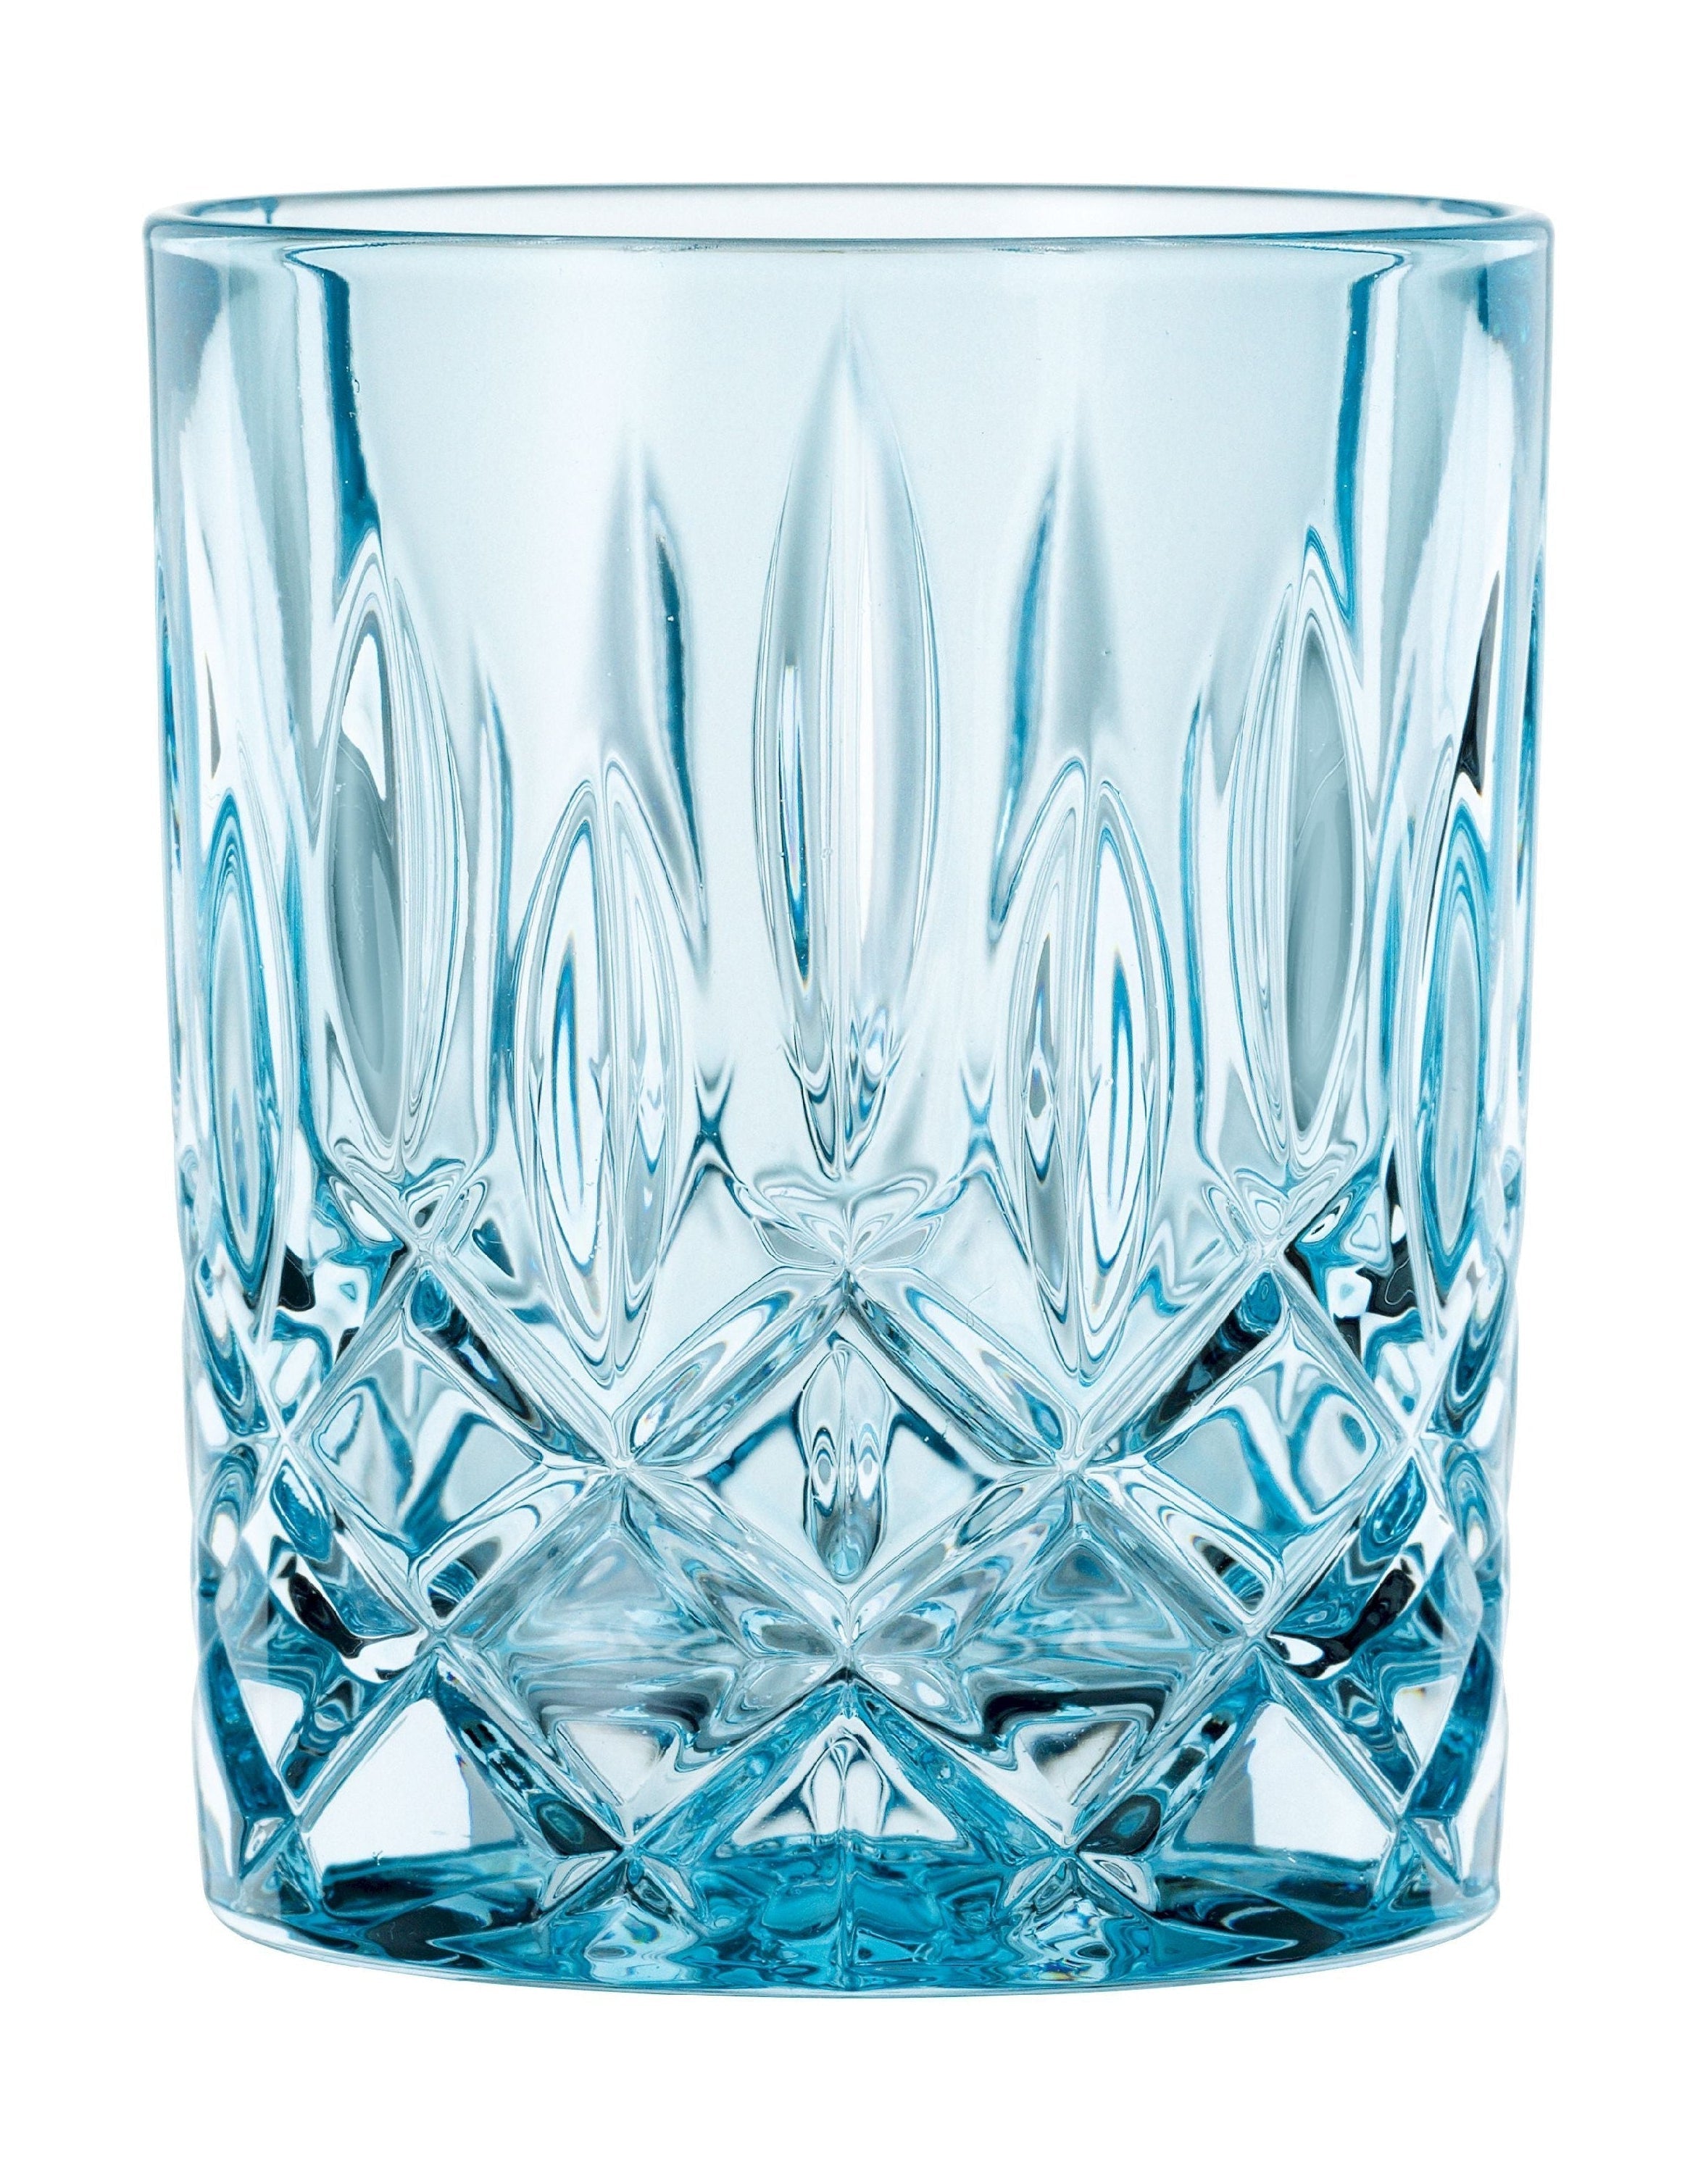 Nachtmann Noblesse Whisky Glass Aqua 295 ml, set van 2